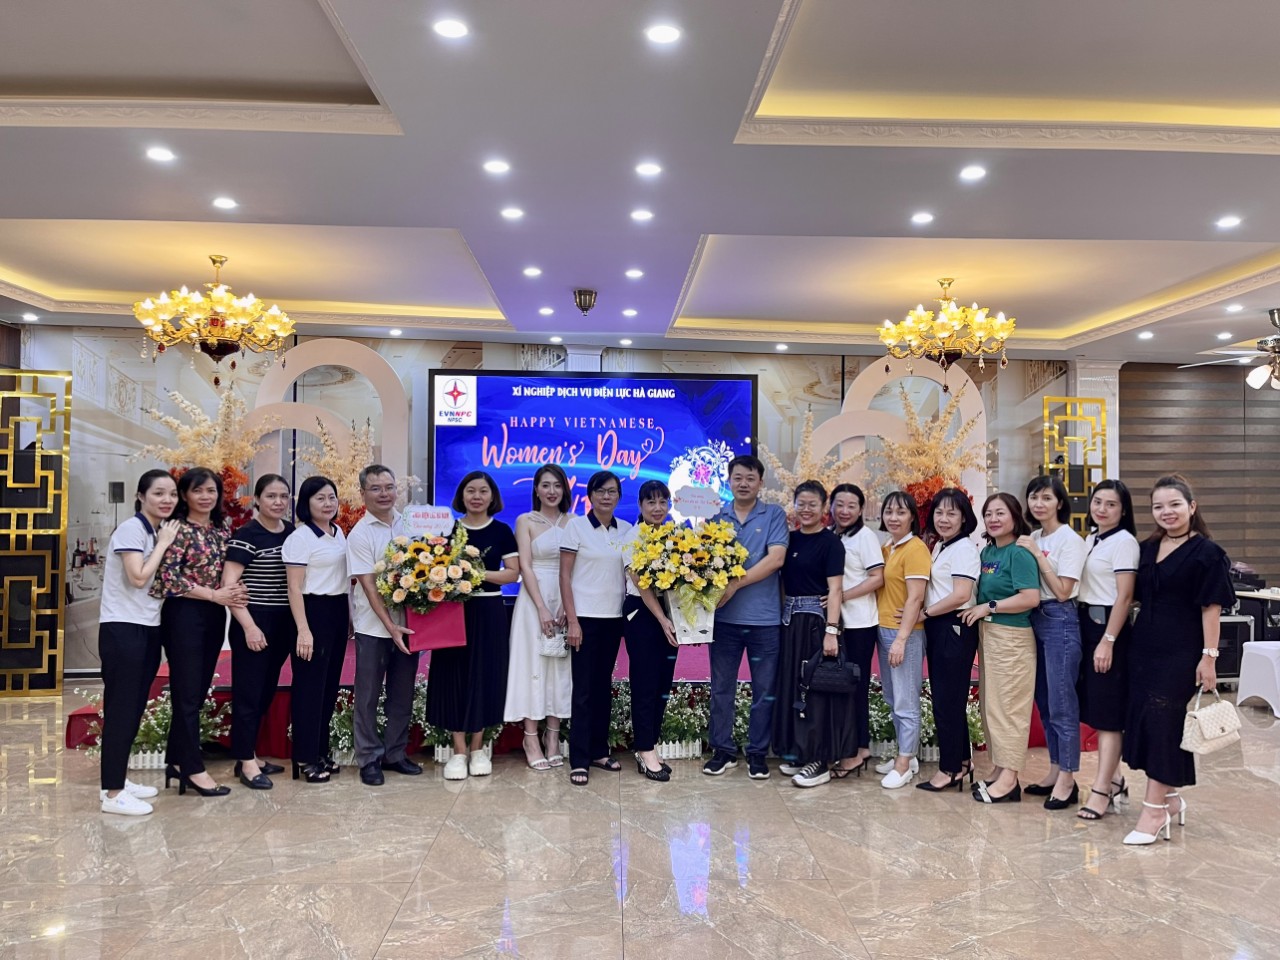 Xí nghiệp Dịch vụ Điện lực Hà Giang tổ chức kỉ niệm ngày Phụ nữ Việt Nam 20/10 và thăm hỏi đoàn viên công đoàn mắc bệnh hiểm nghèo.